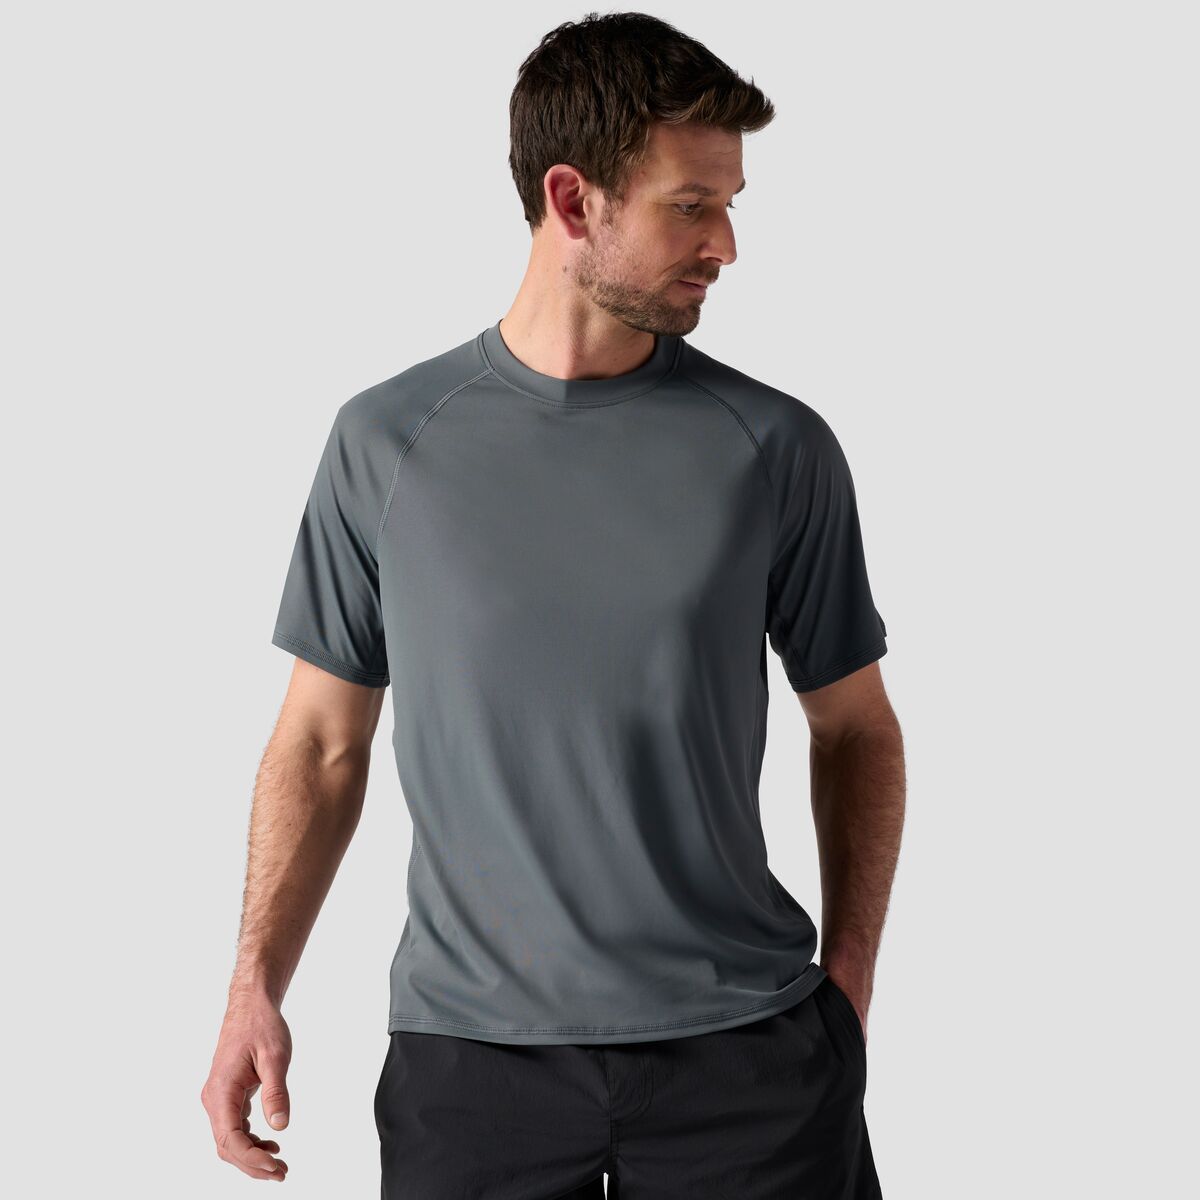 Stoic Short-Sleeve Tech T-Shirt - Men's